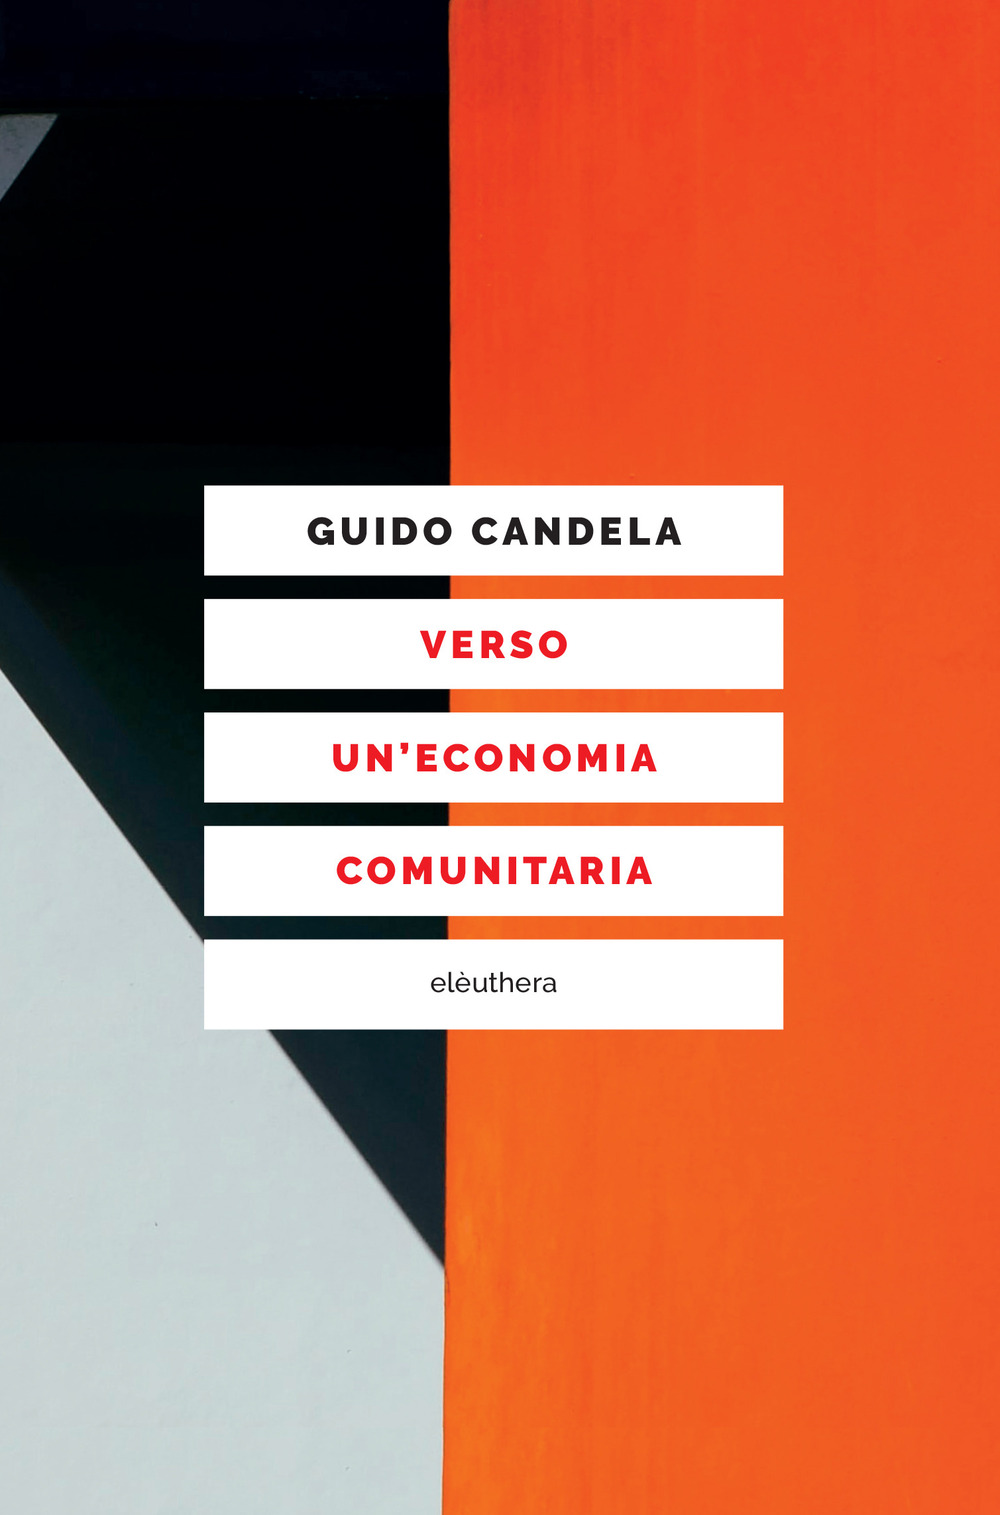 VERSO UN'ECONOMIA COMUNITARIA - Candela Guido - 9788833021300